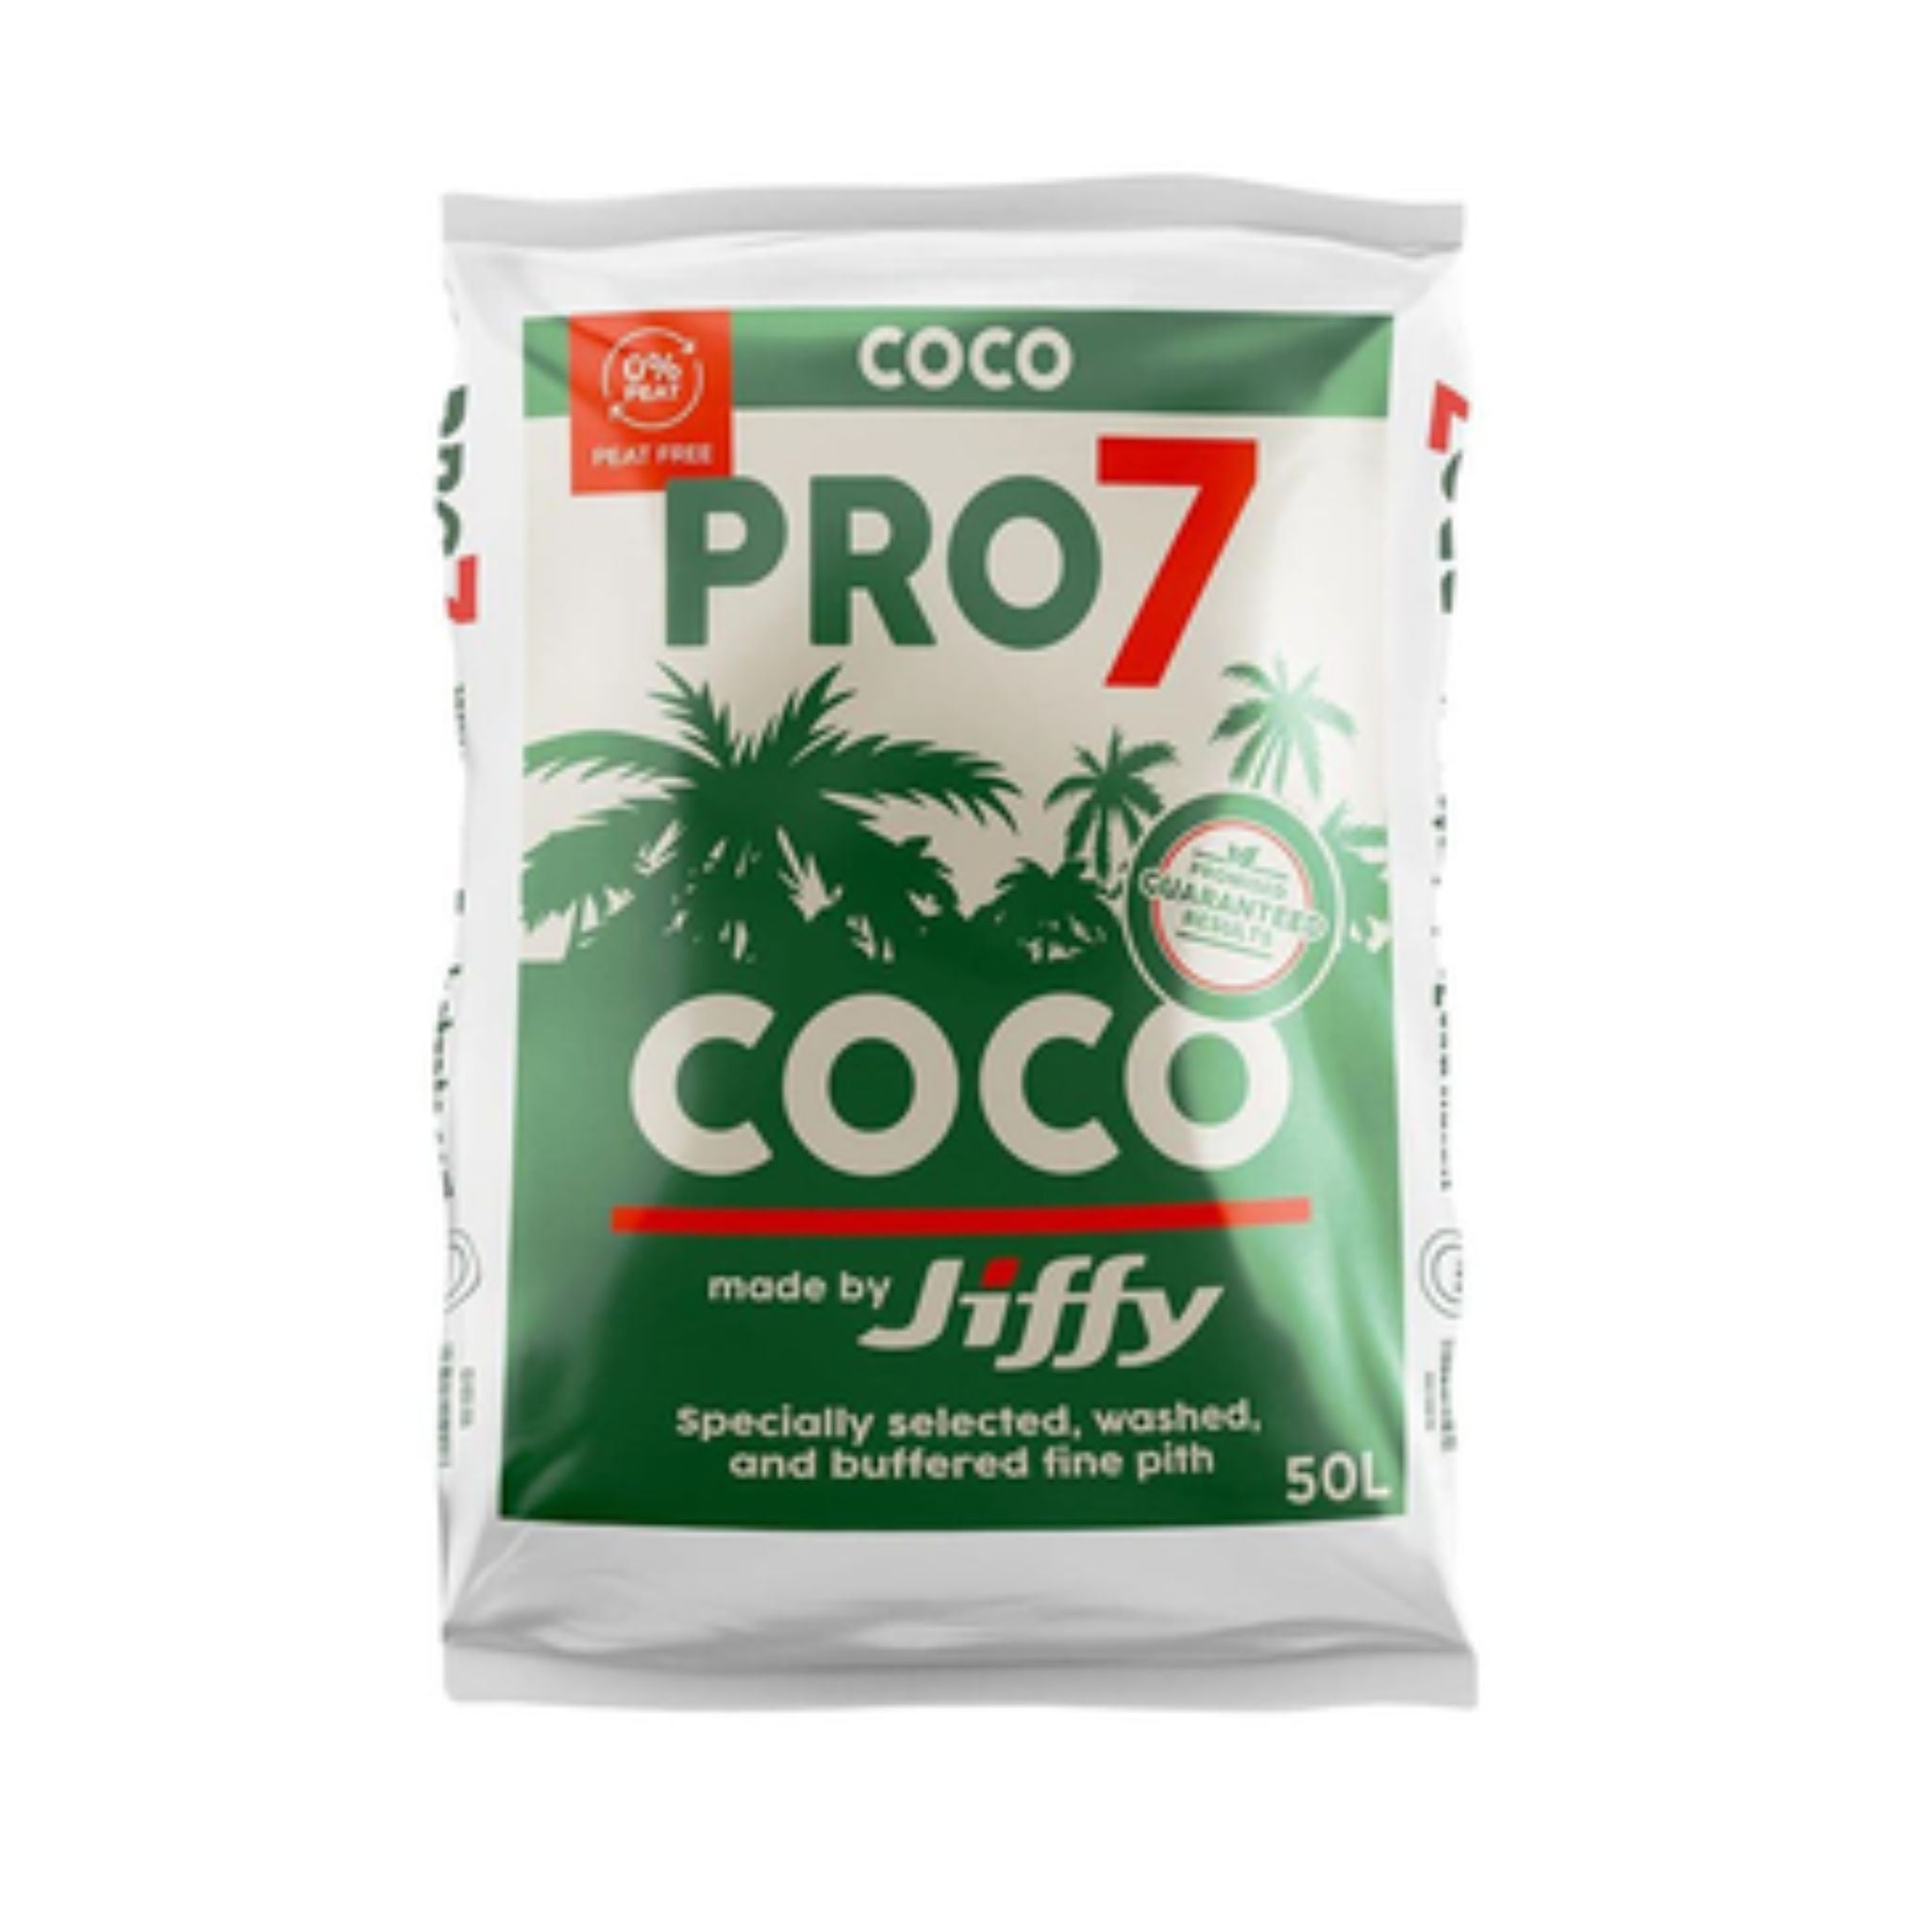 Jiffy Pro7 Coco 50L